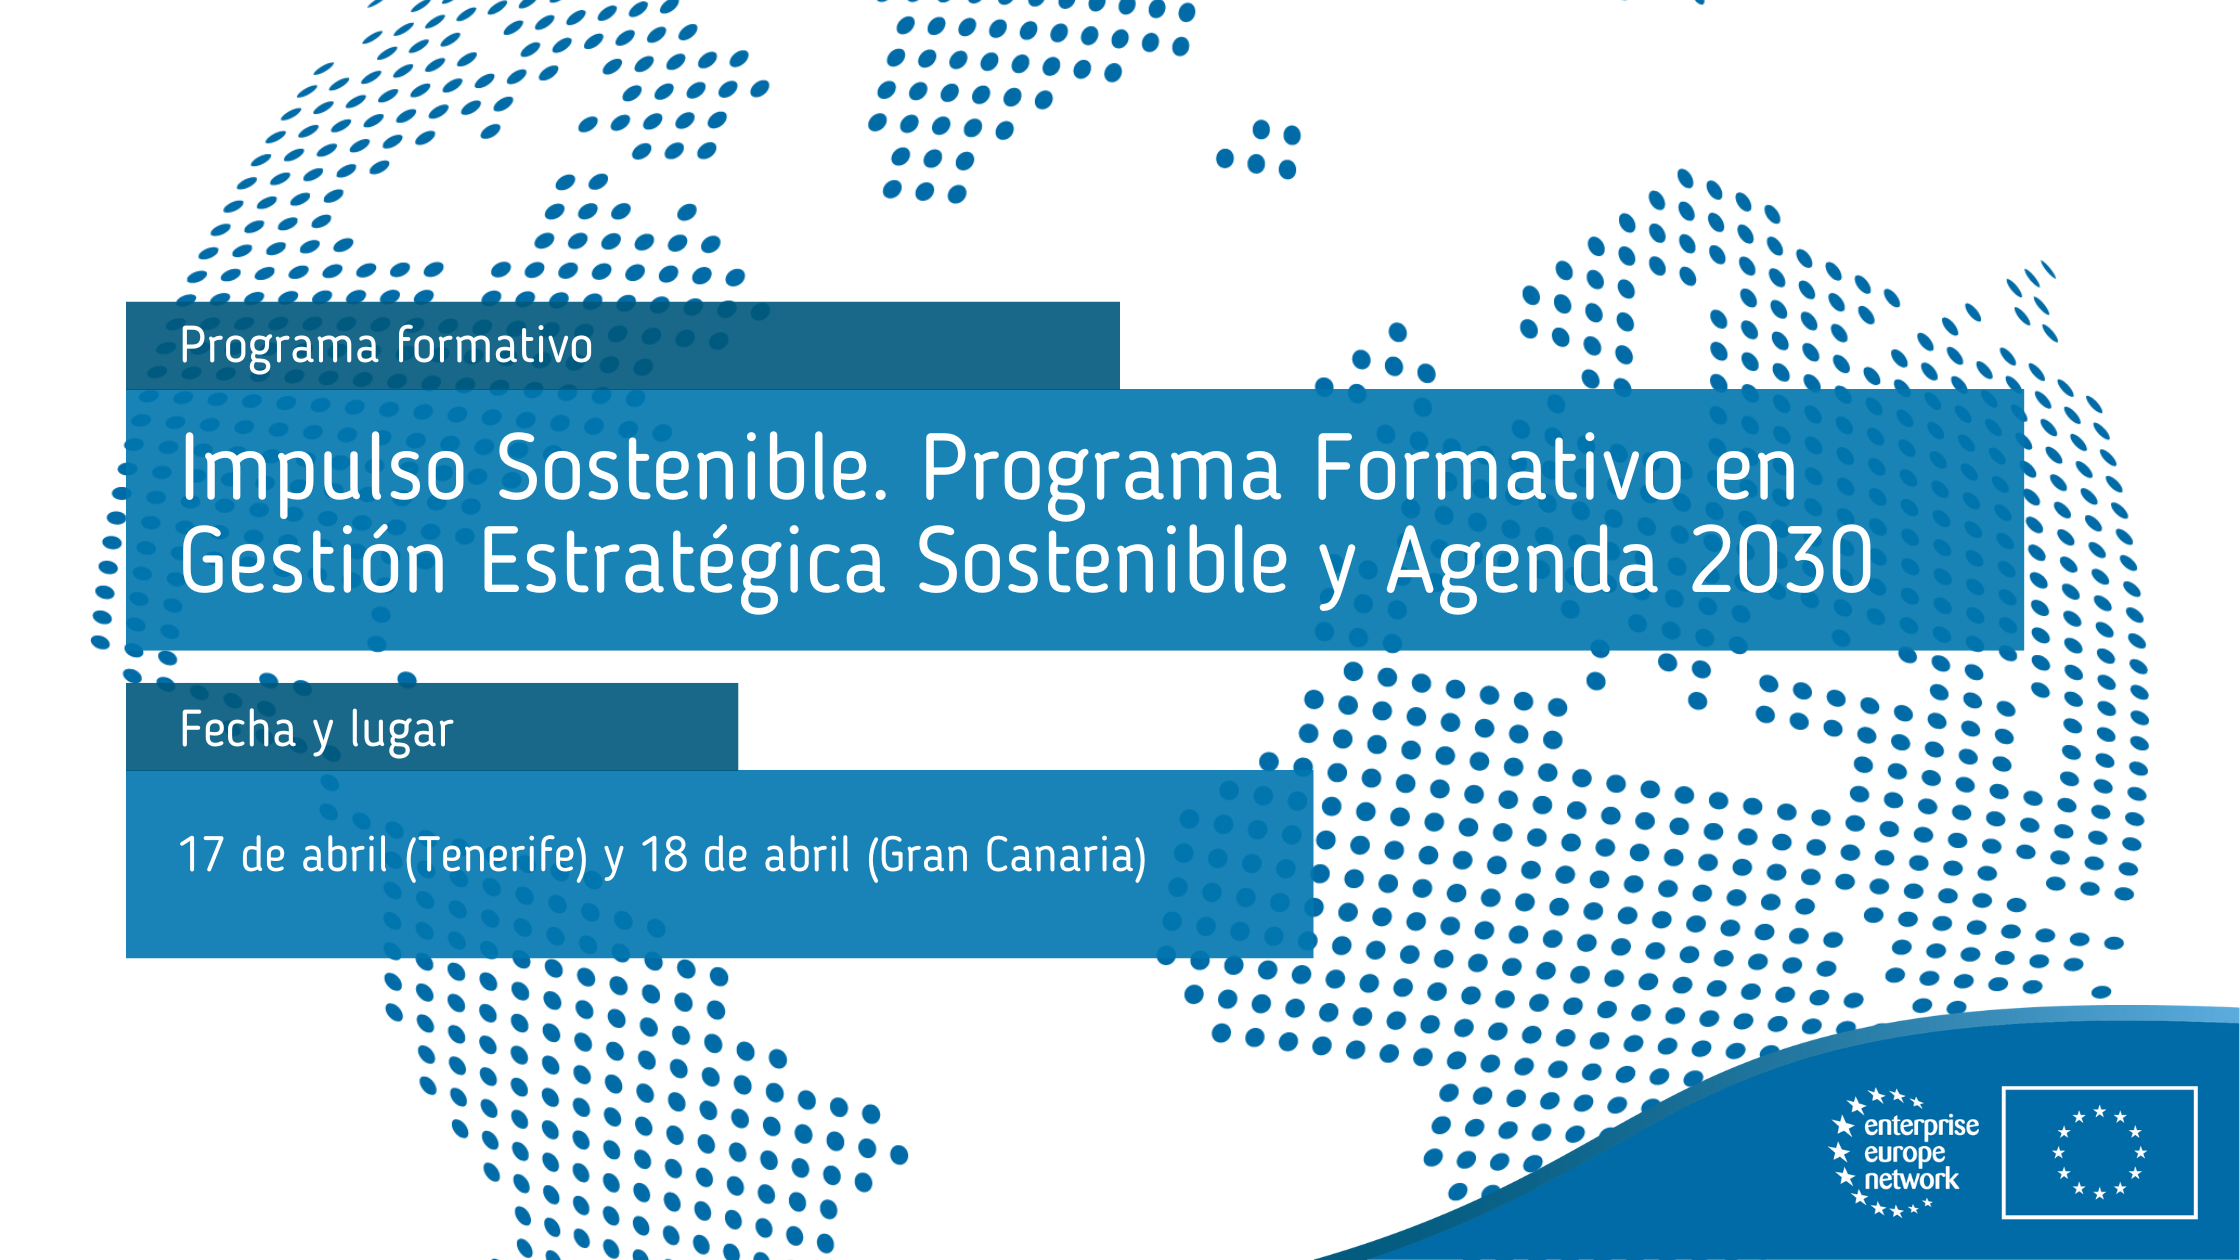 Impulso_Sostenible_Programa_Formativo_en_Gestión_Estratégica_Sostenible_y_Agenda_2030_Abril